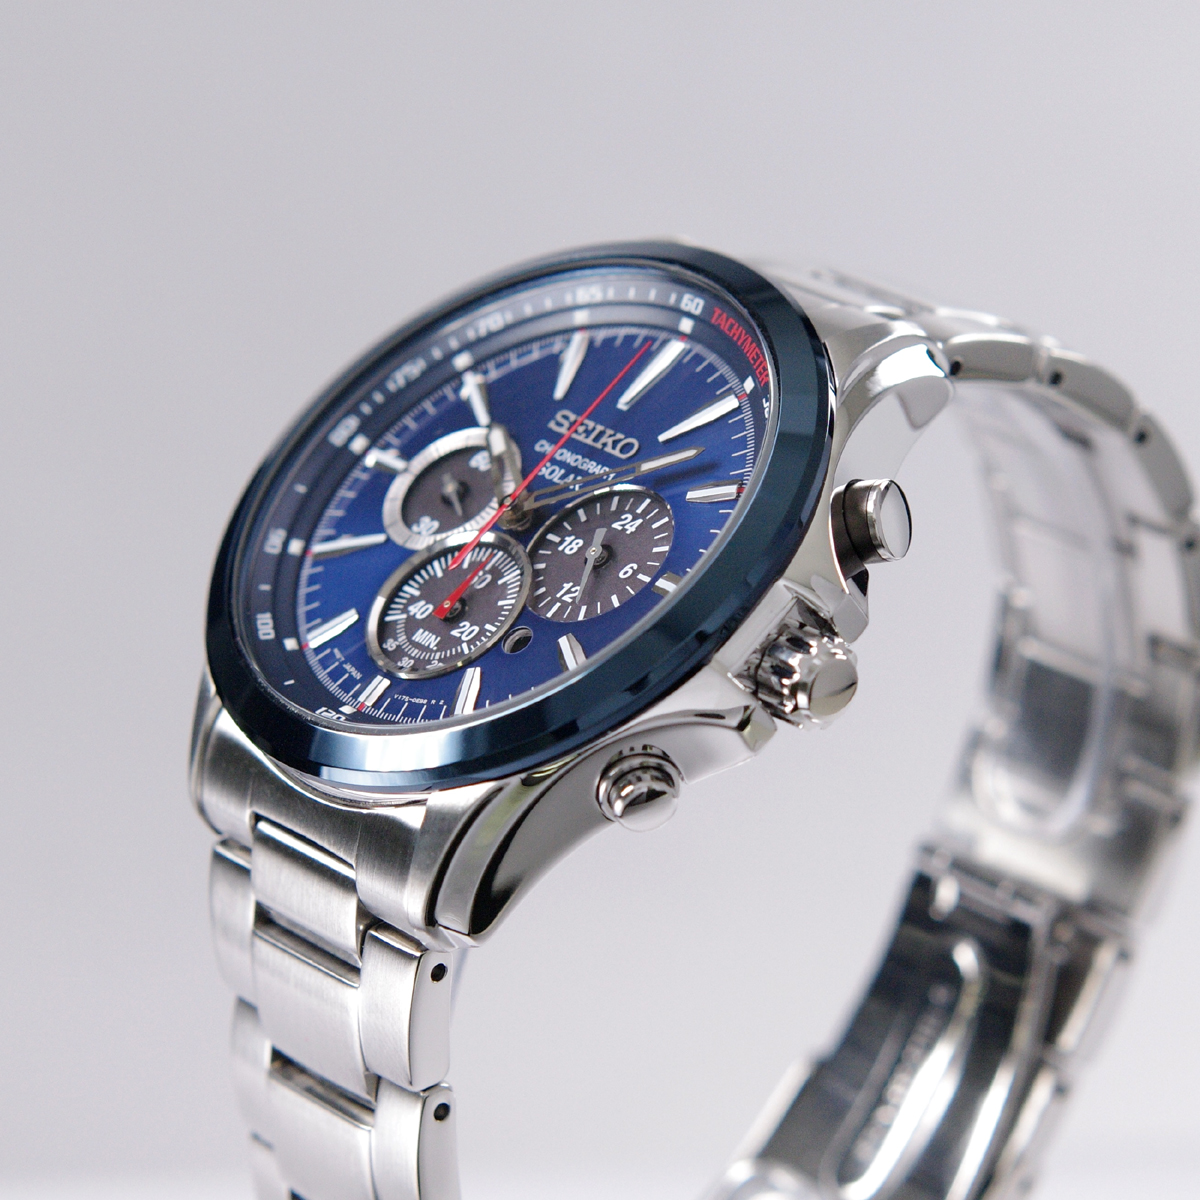 楽天市場 セイコー Seiko 腕時計 ソーラー クロノグラフ 100m防水 日本製ムーブメント 海外モデル ネイビーxシルバー Ssc495p1 メンズ 逆輸入品 アッキーインターナショナル